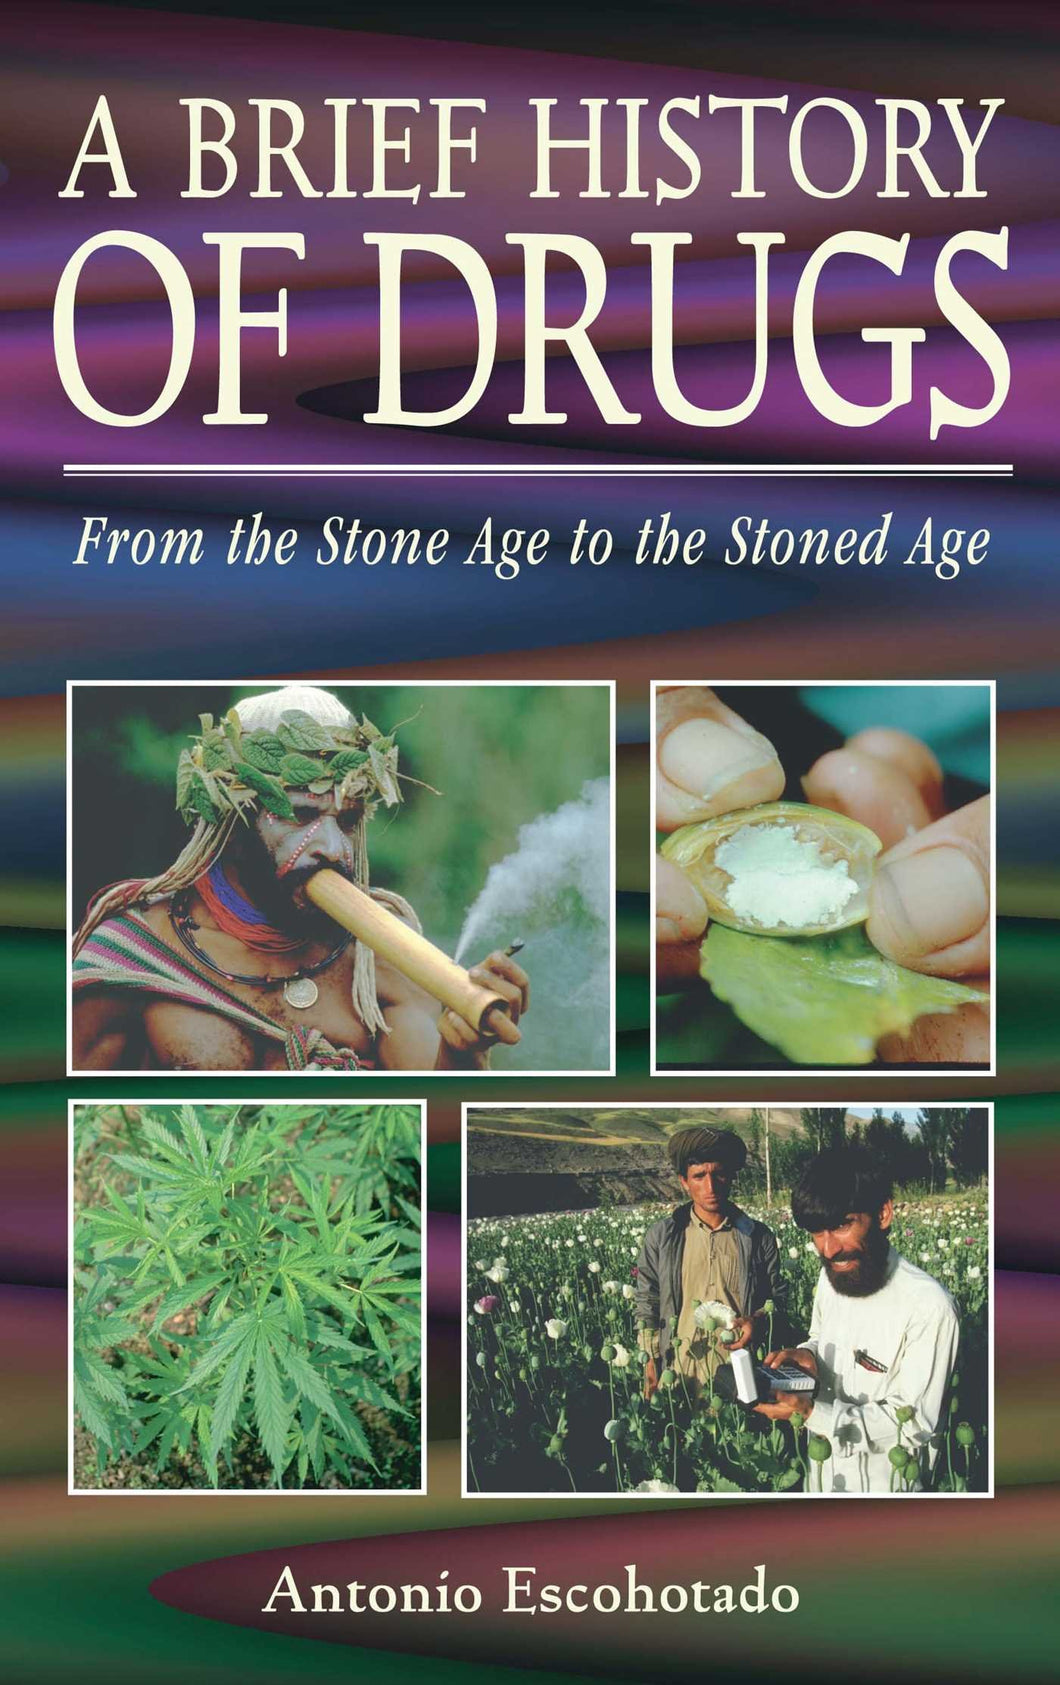 A BRIEF HISTORY OF DRUGS - Antonio Escohotado